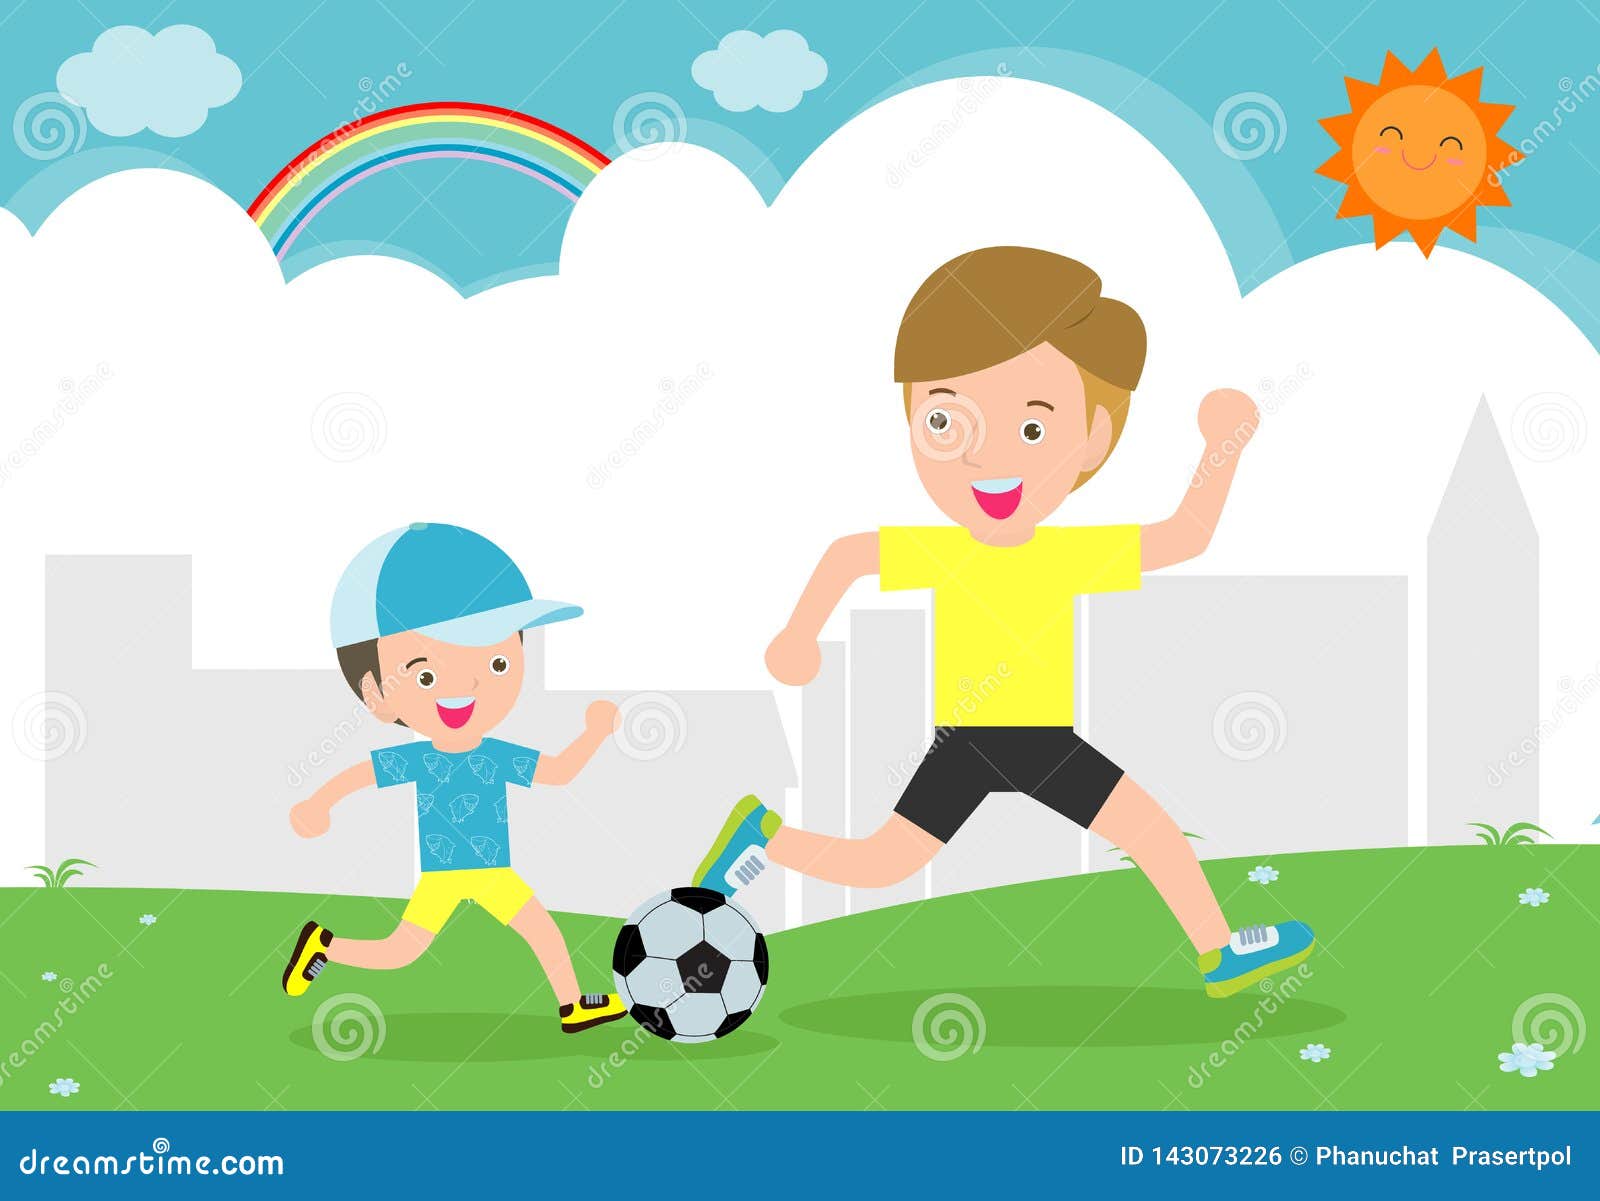 Папа играет в футбол. Сюжетная картина футбол для детей. Папа играет в футбол рисунок. Папа с сыном играют в футбол рисунок. Рисунки папы и ребенка играющих в футбол.